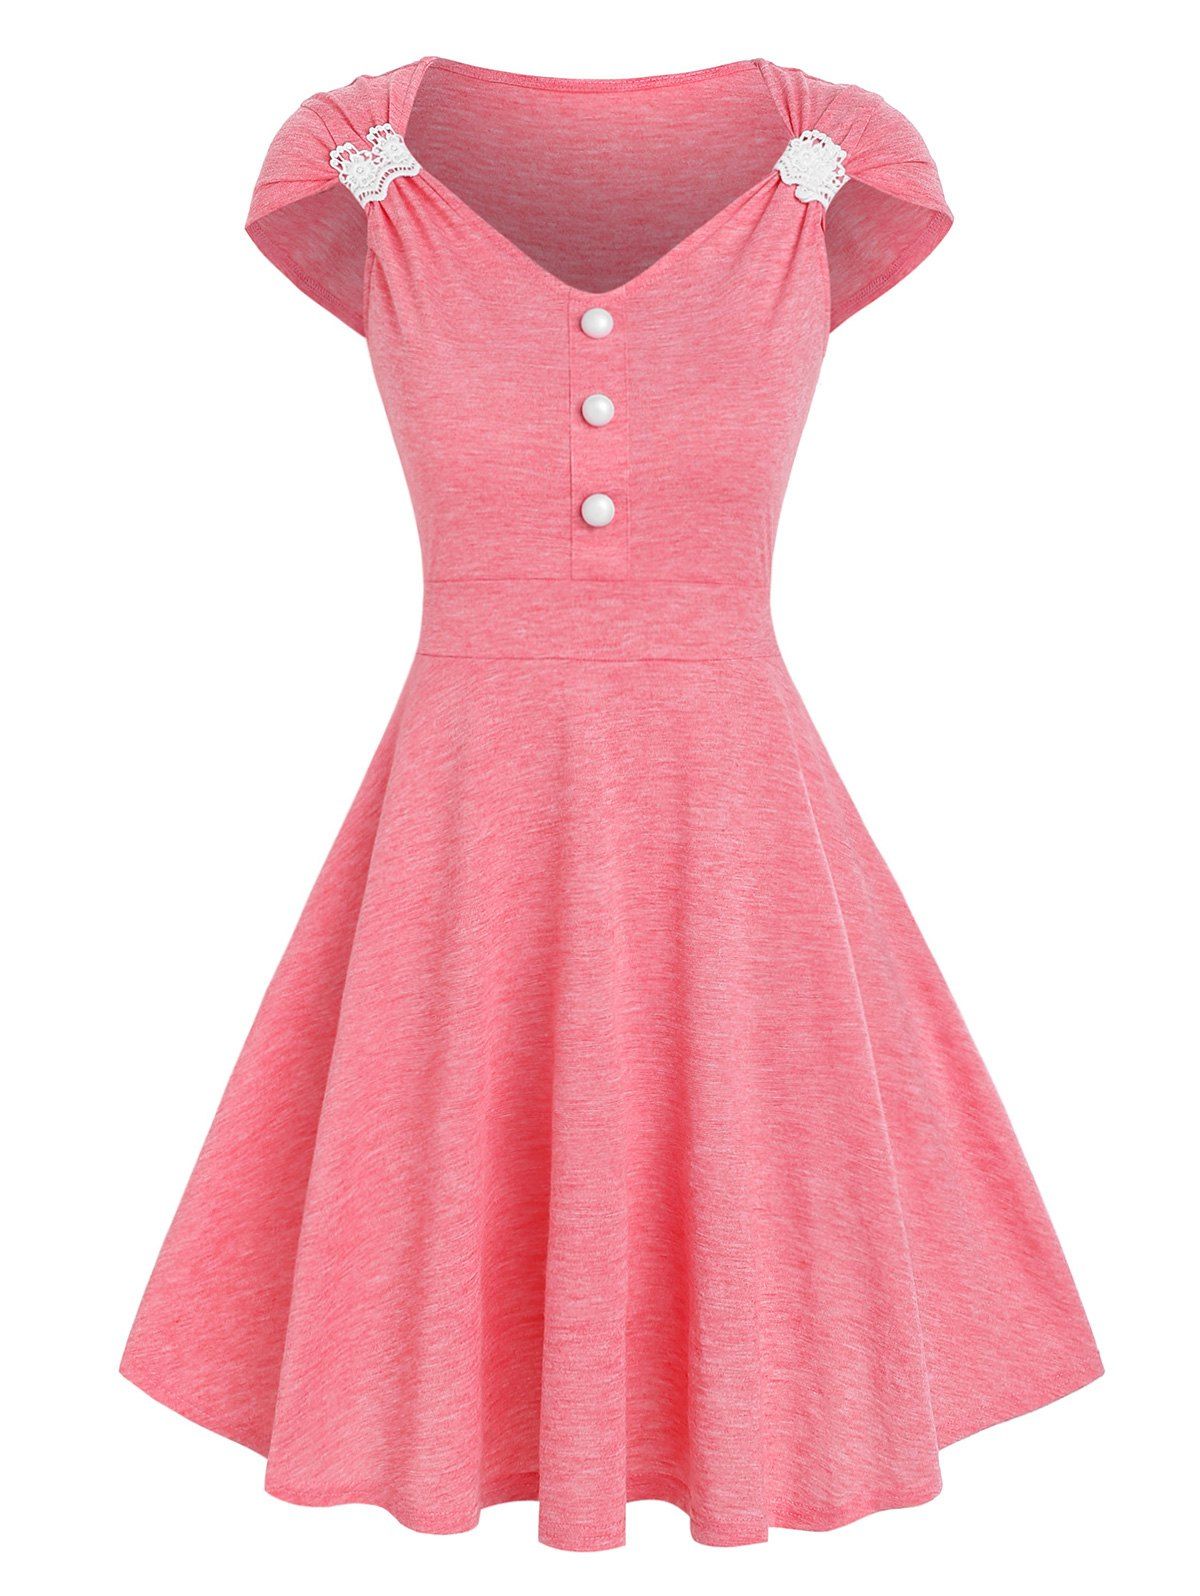 Heathered Summer Dress Crochet Insert Cap Sleeve Mini Dress Mock Button Flare A Line Dress - LIGHT PINK M